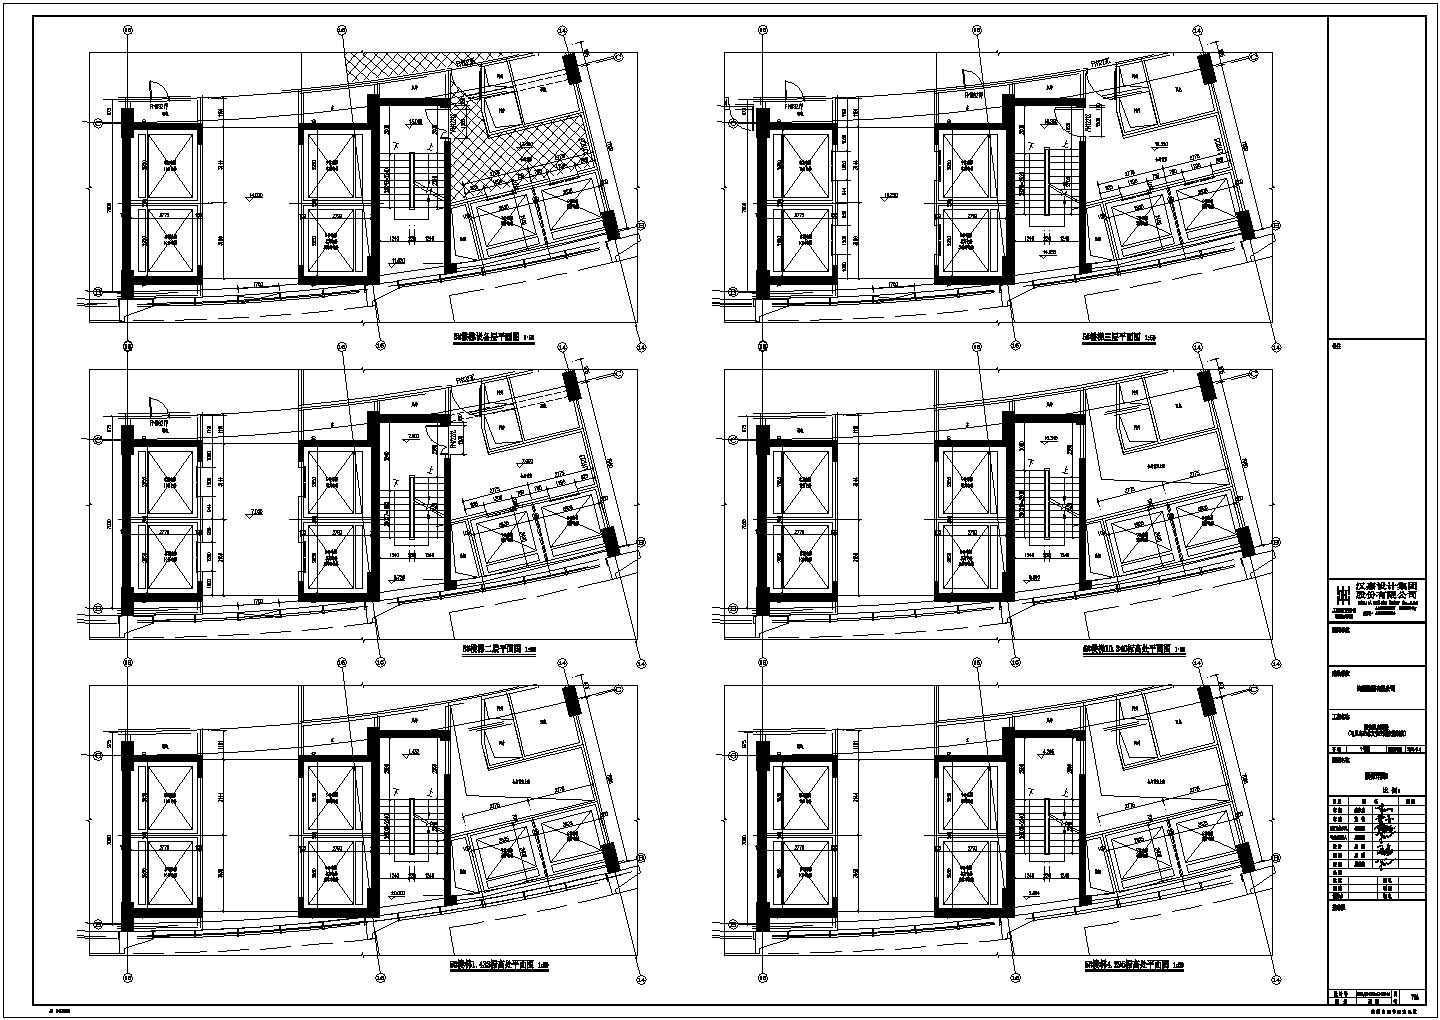 马儿岛9层度假酒店建筑结构设计施工图